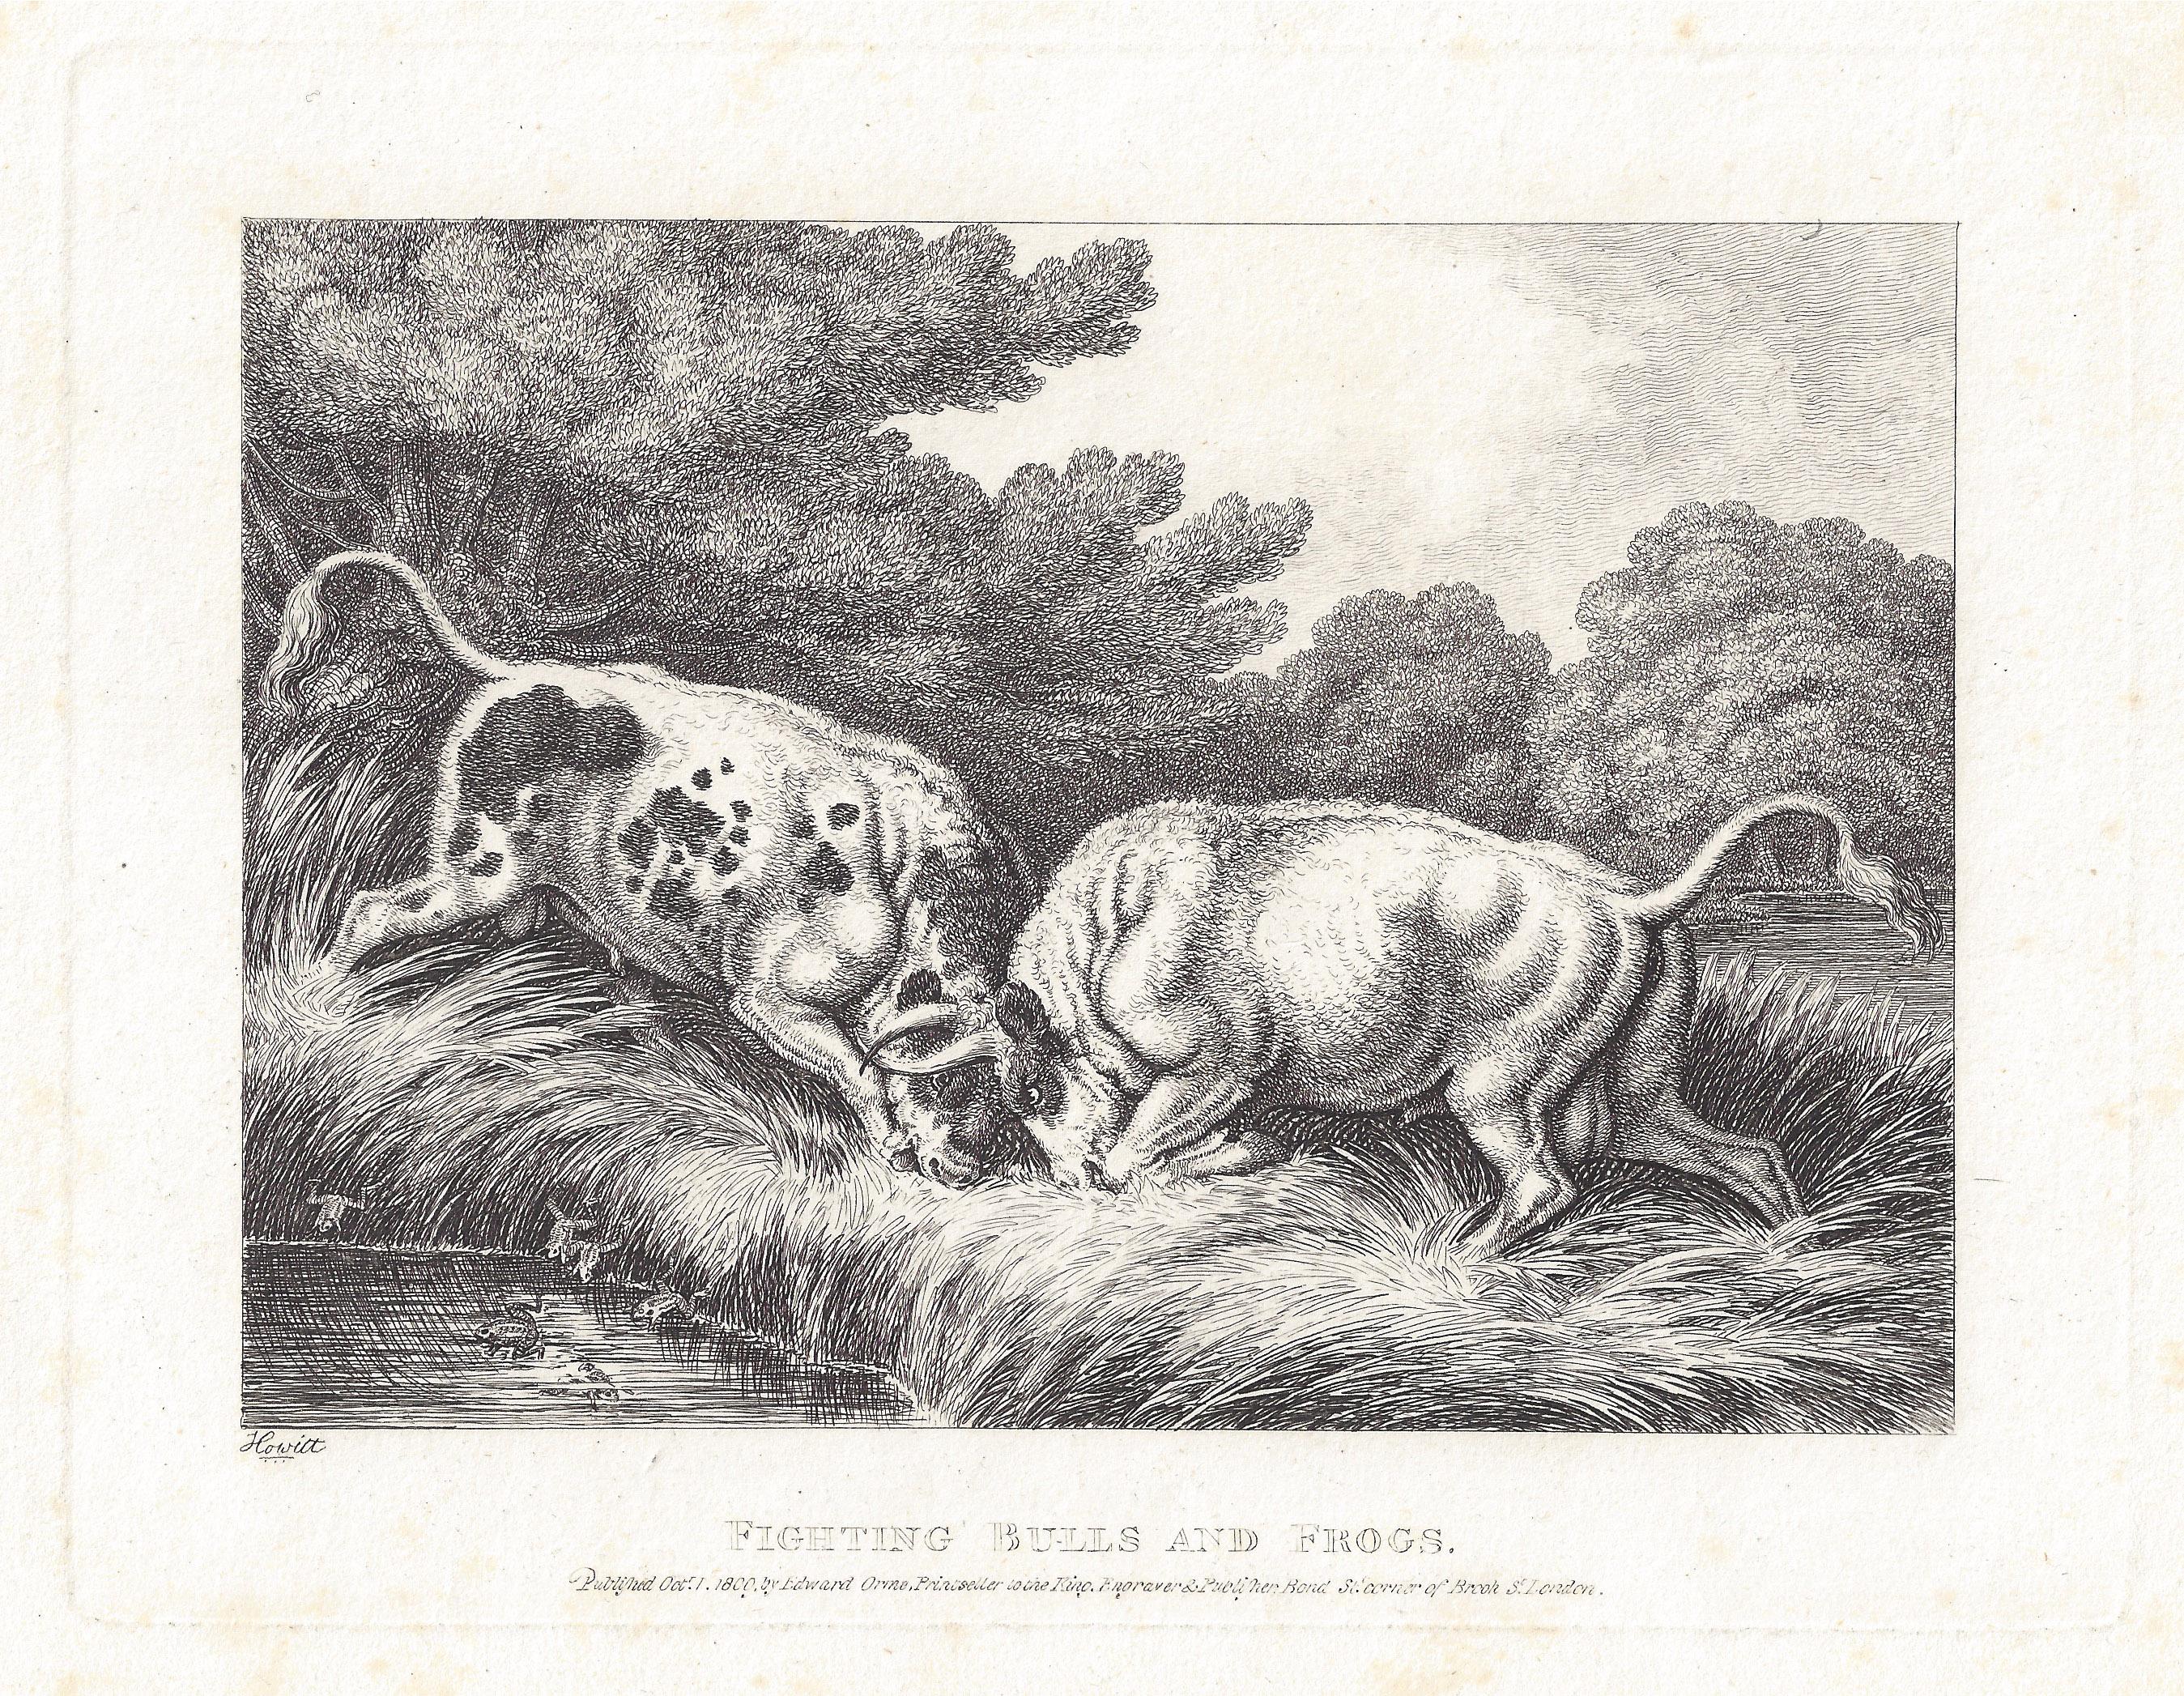 Fighting Bulls and Frogs, antike Tierfabel-Radierung von Samuel Howitt